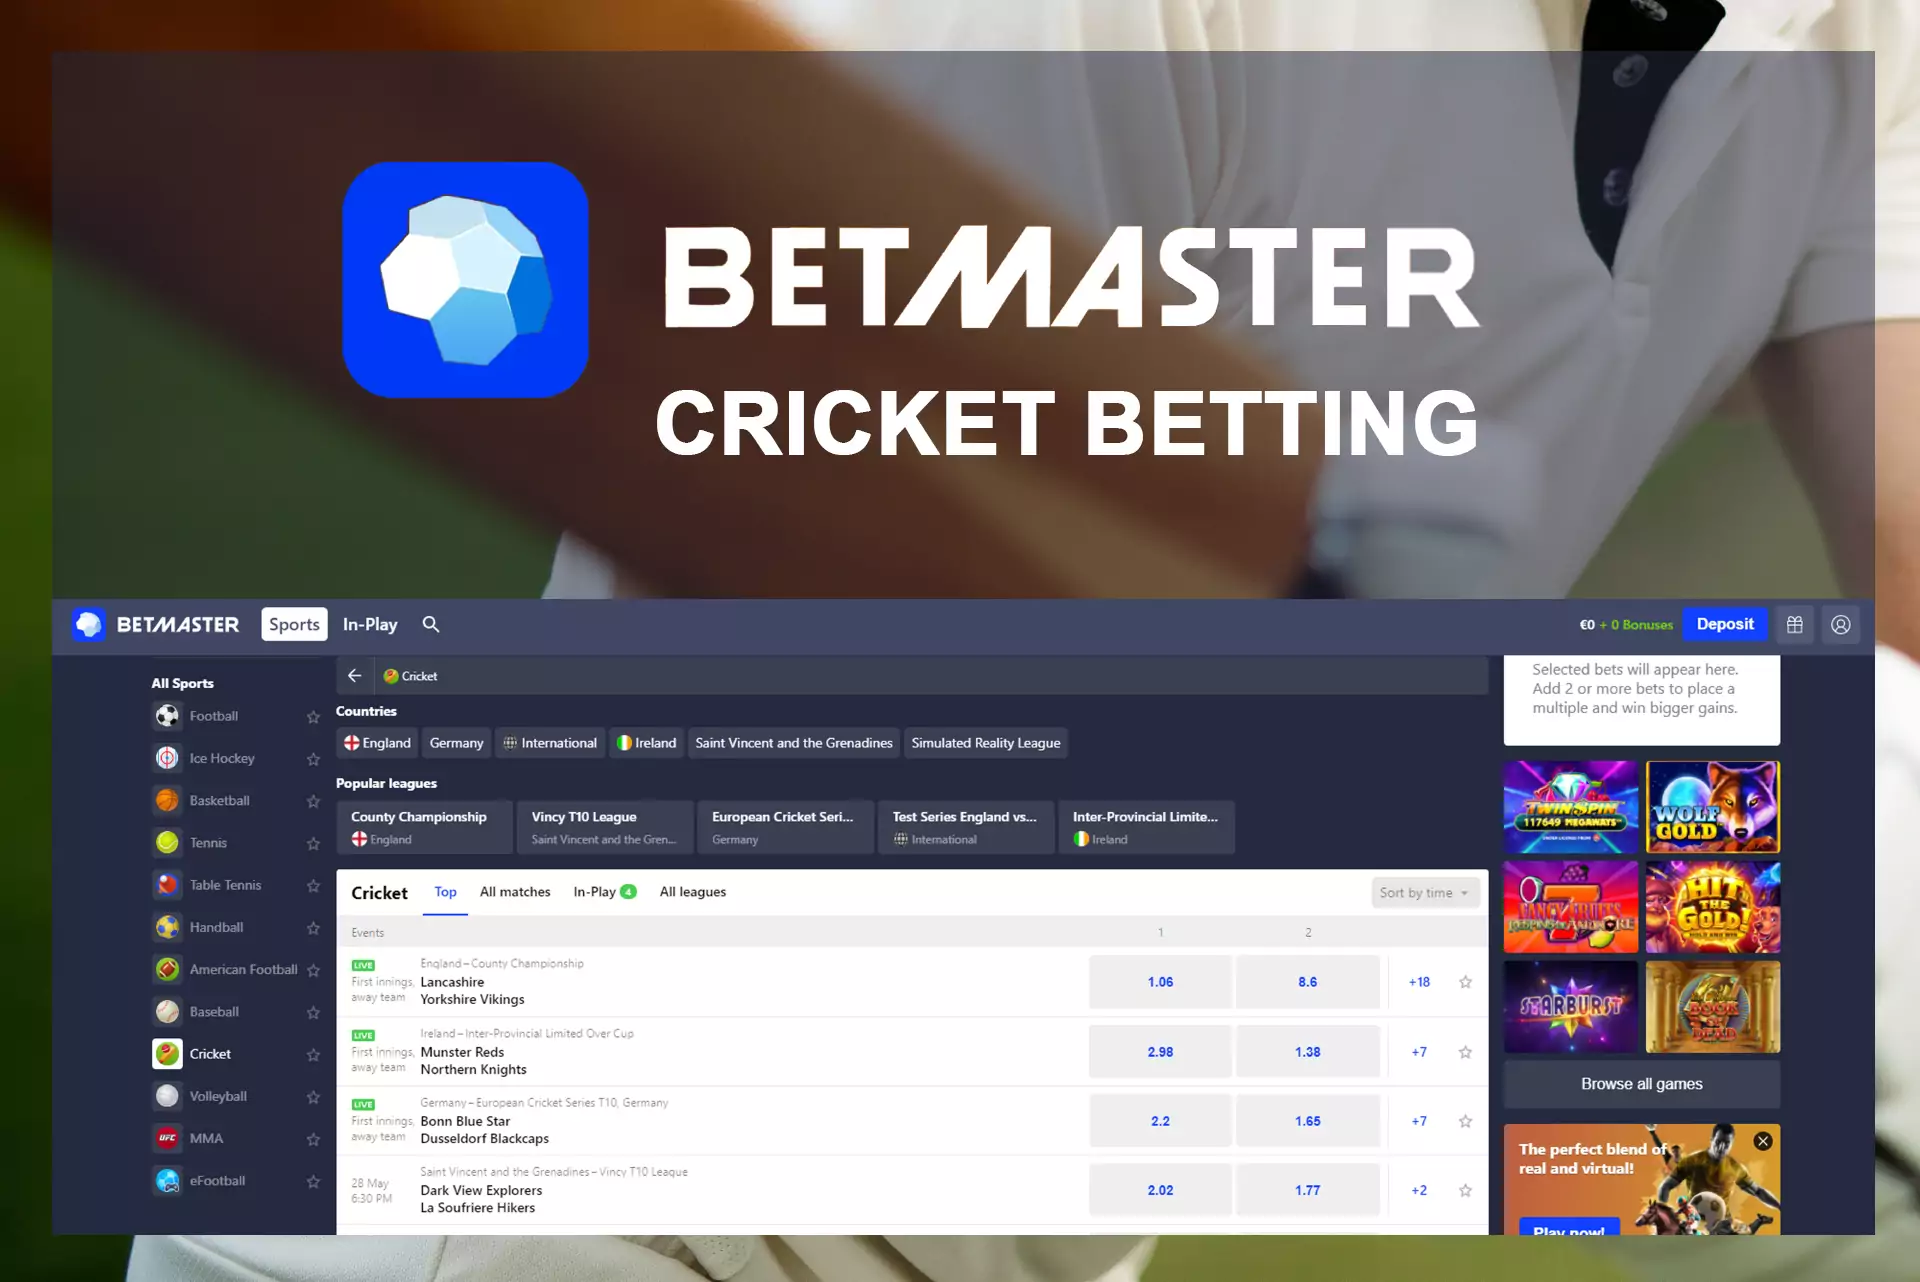 चुनें क्रिकेट टीम और एक शर्त जगह पर Betmaster।